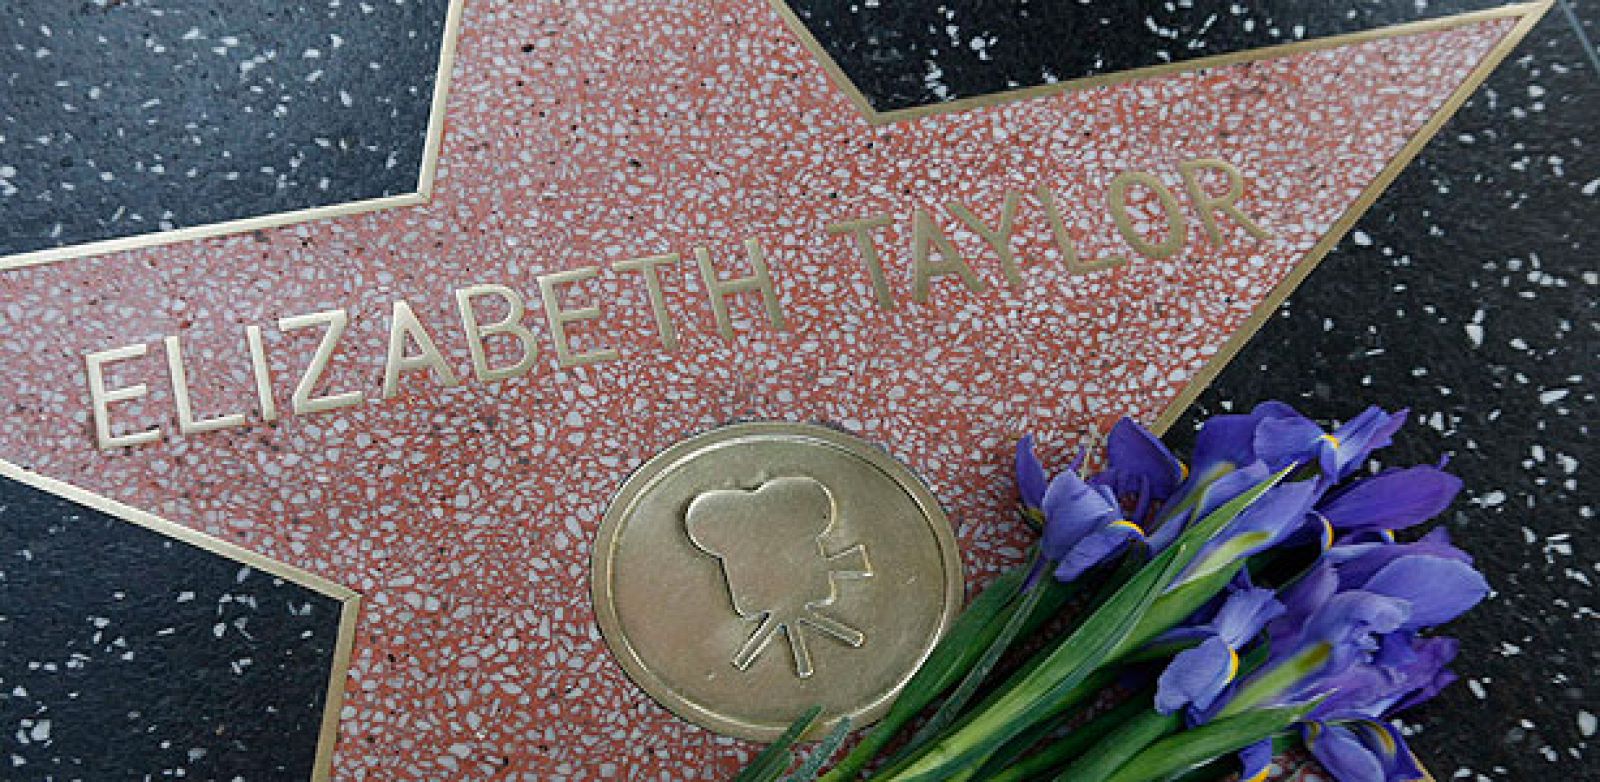 Flores sobre la estrella de elizabeth Taylor en el paseo de la fama de Hollywood